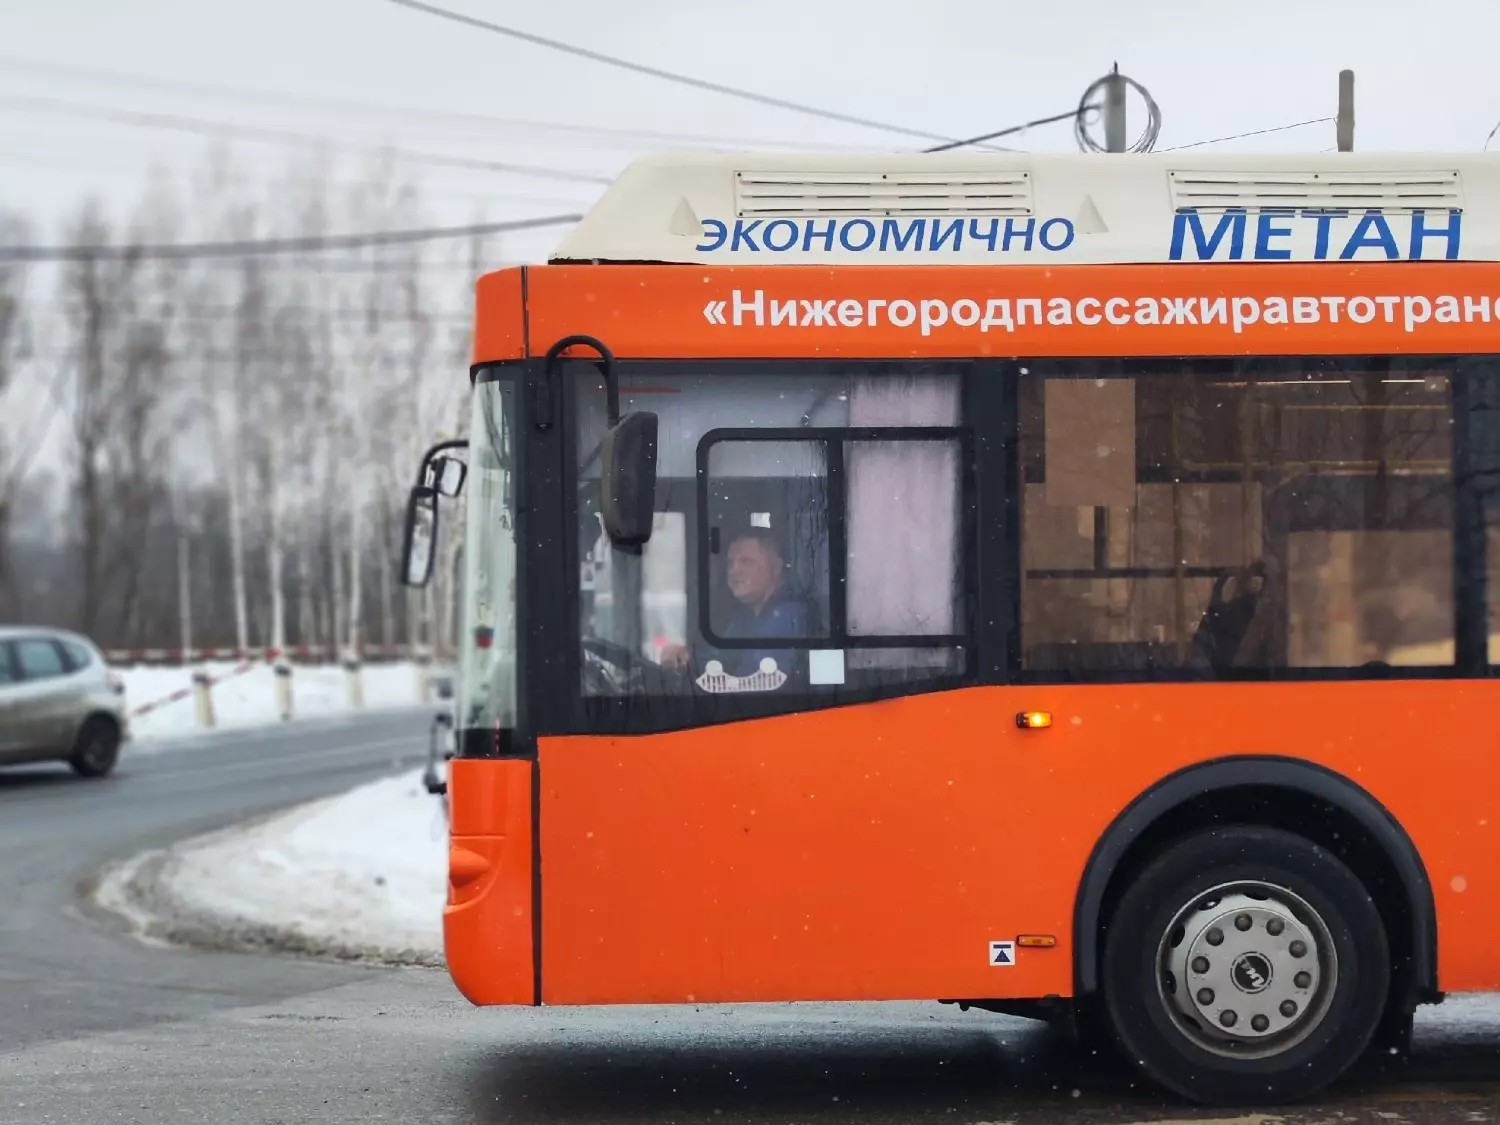 Автобус в Нижнем Новгороде